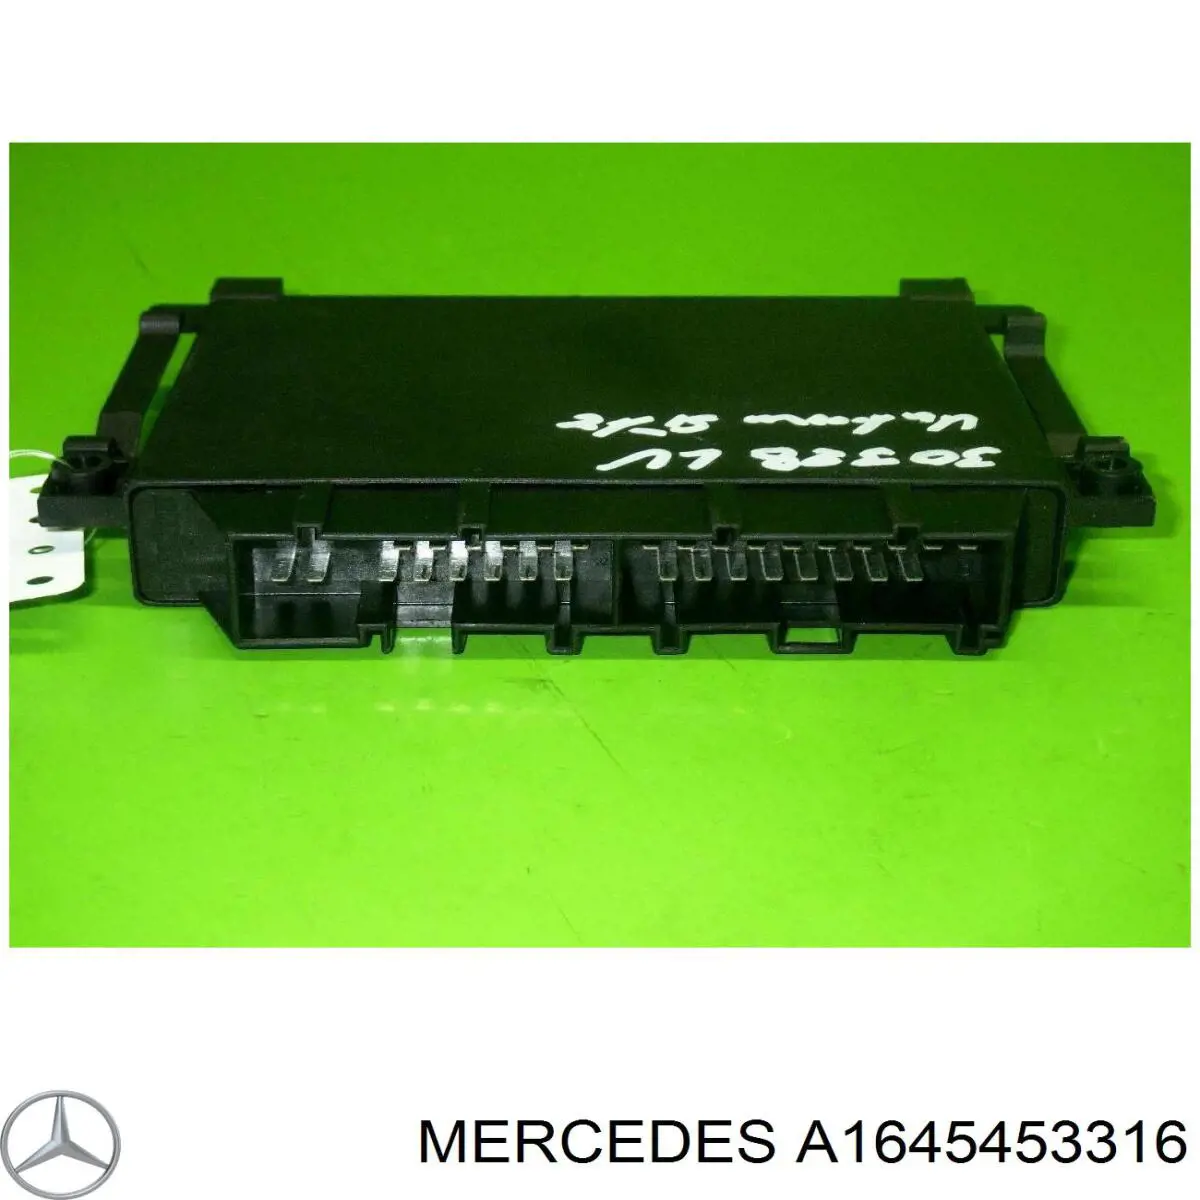 Unidad de control, auxiliar de aparcamiento para Mercedes ML/GLE (W164)